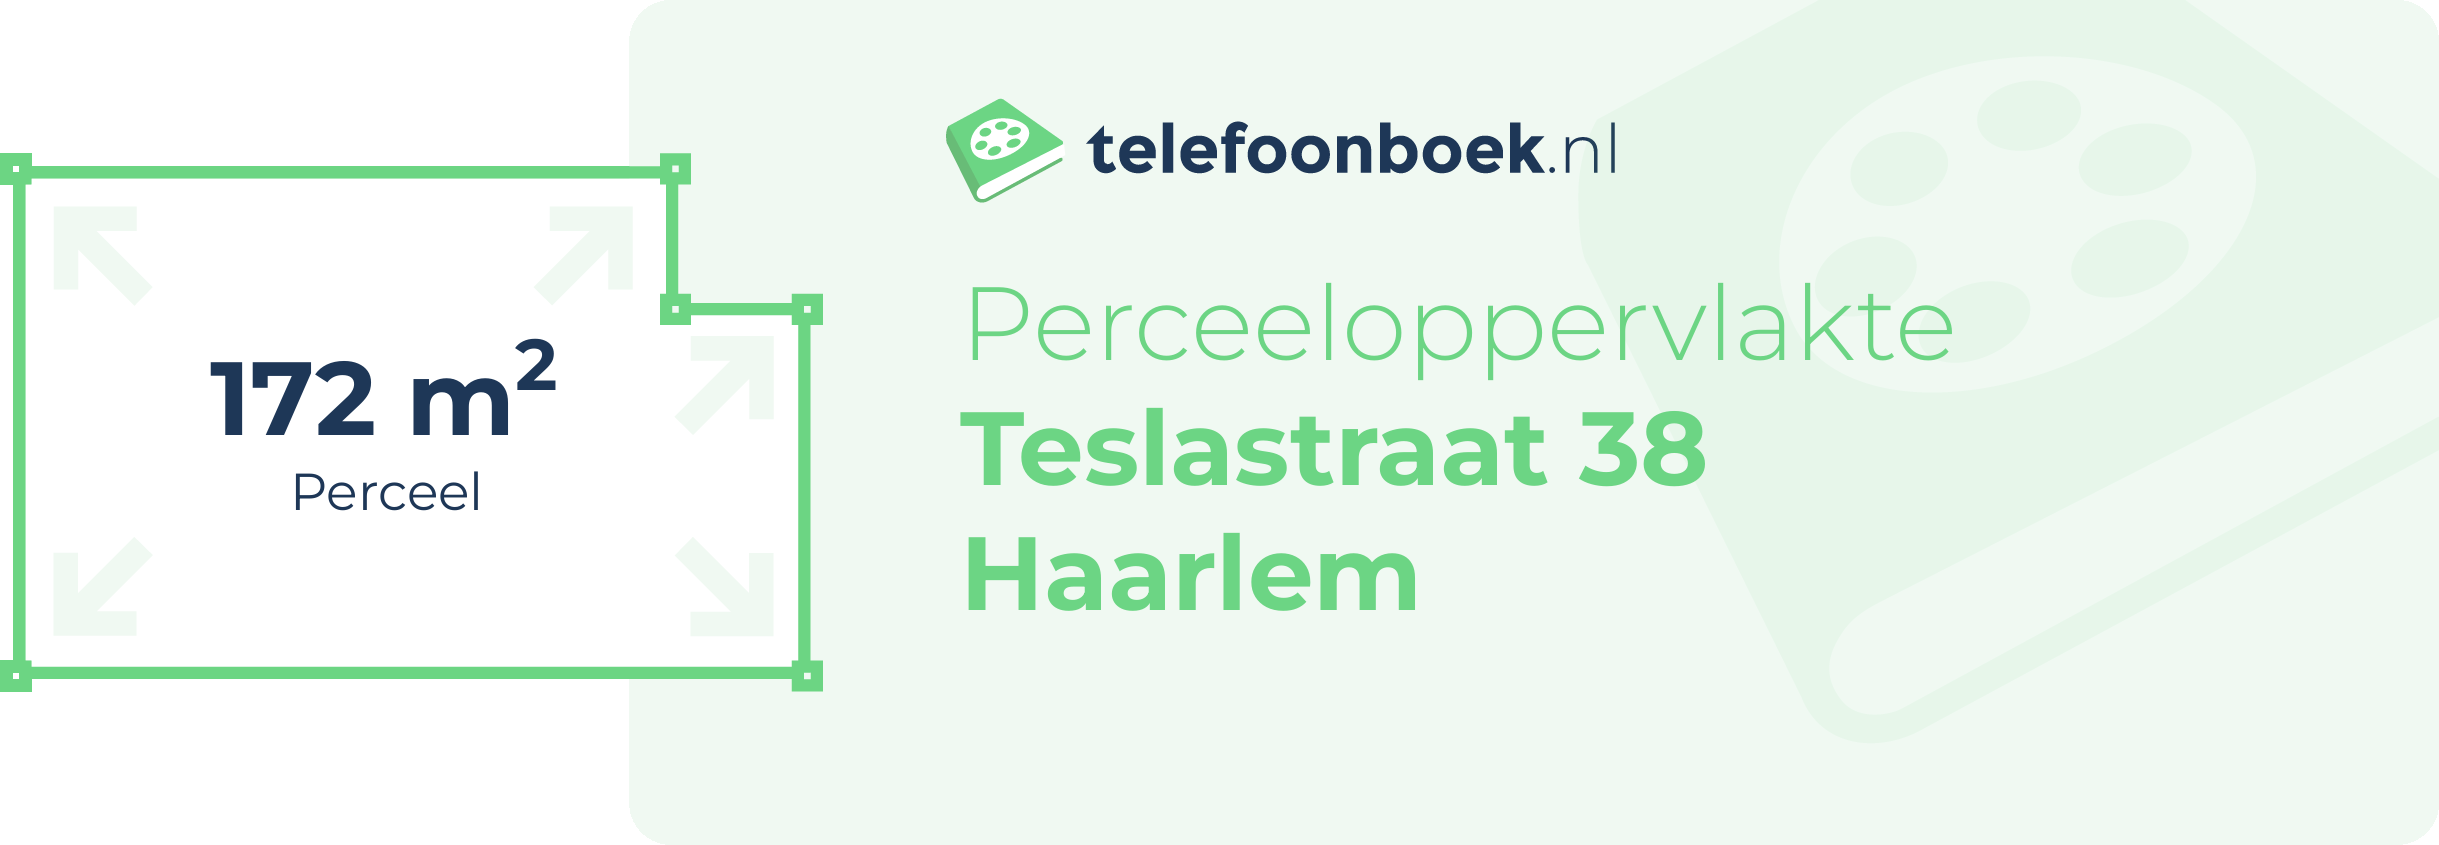 Perceeloppervlakte Teslastraat 38 Haarlem